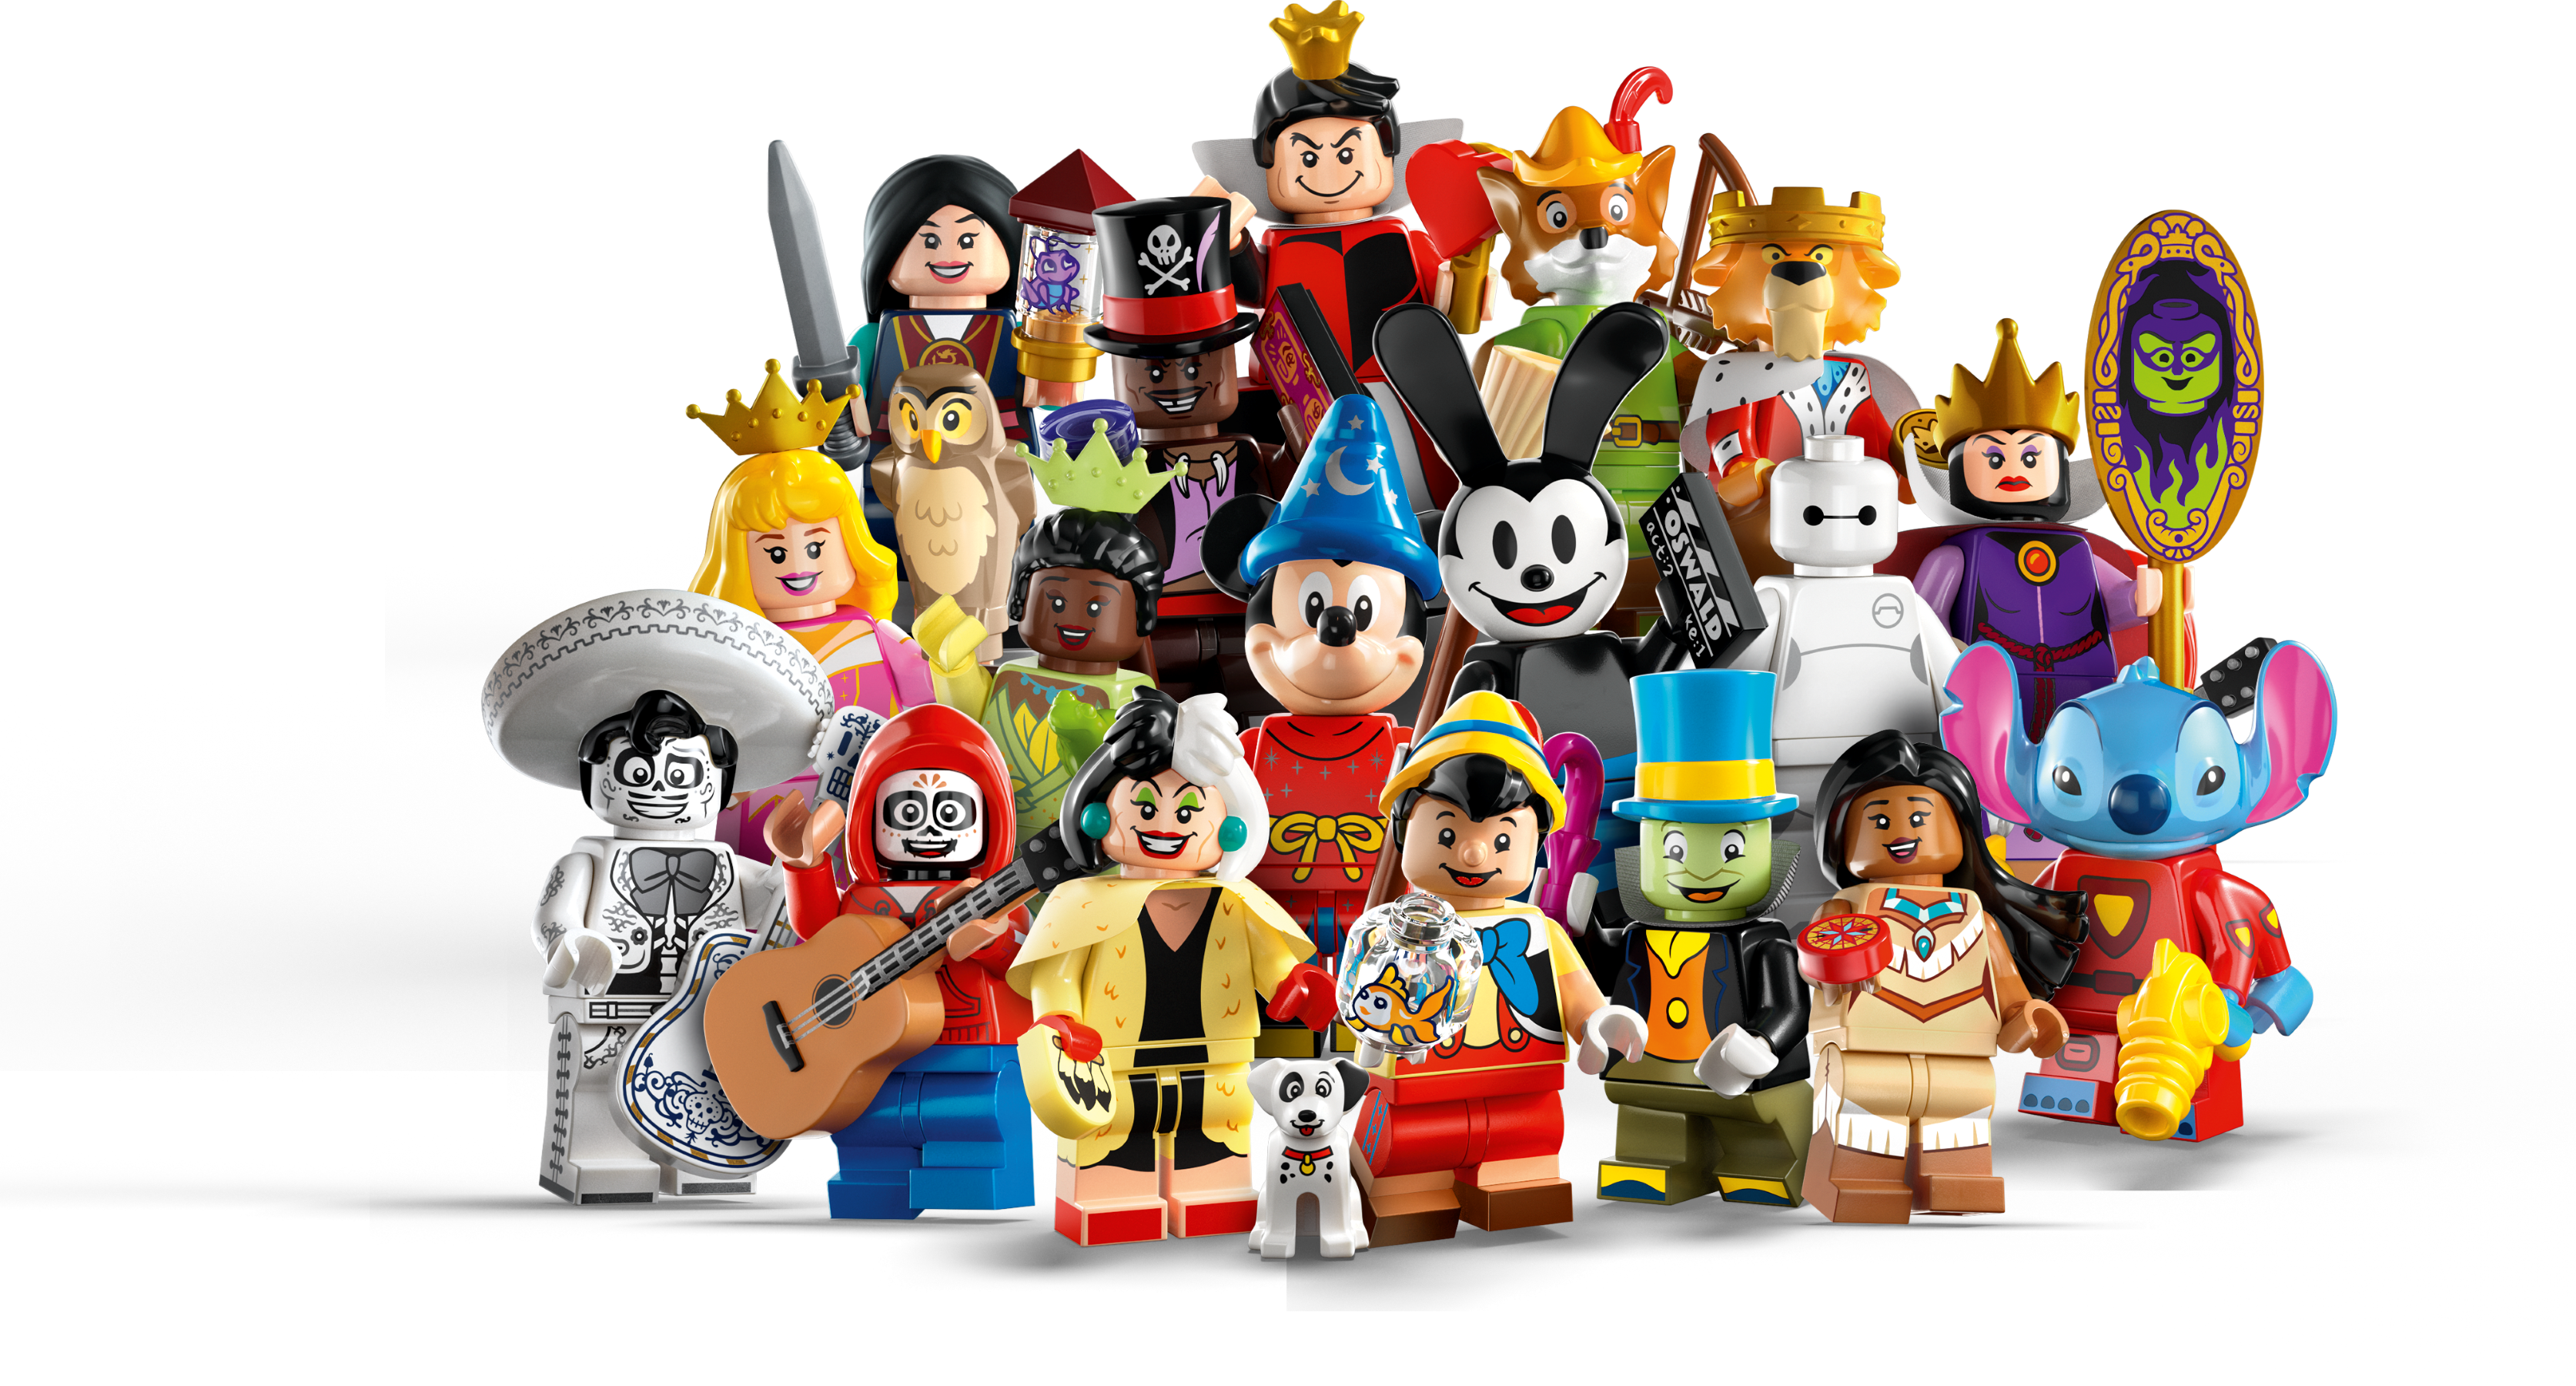 contant geld bevestig alstublieft Onnodig LEGO® Minifigures | Official LEGO® Shop US